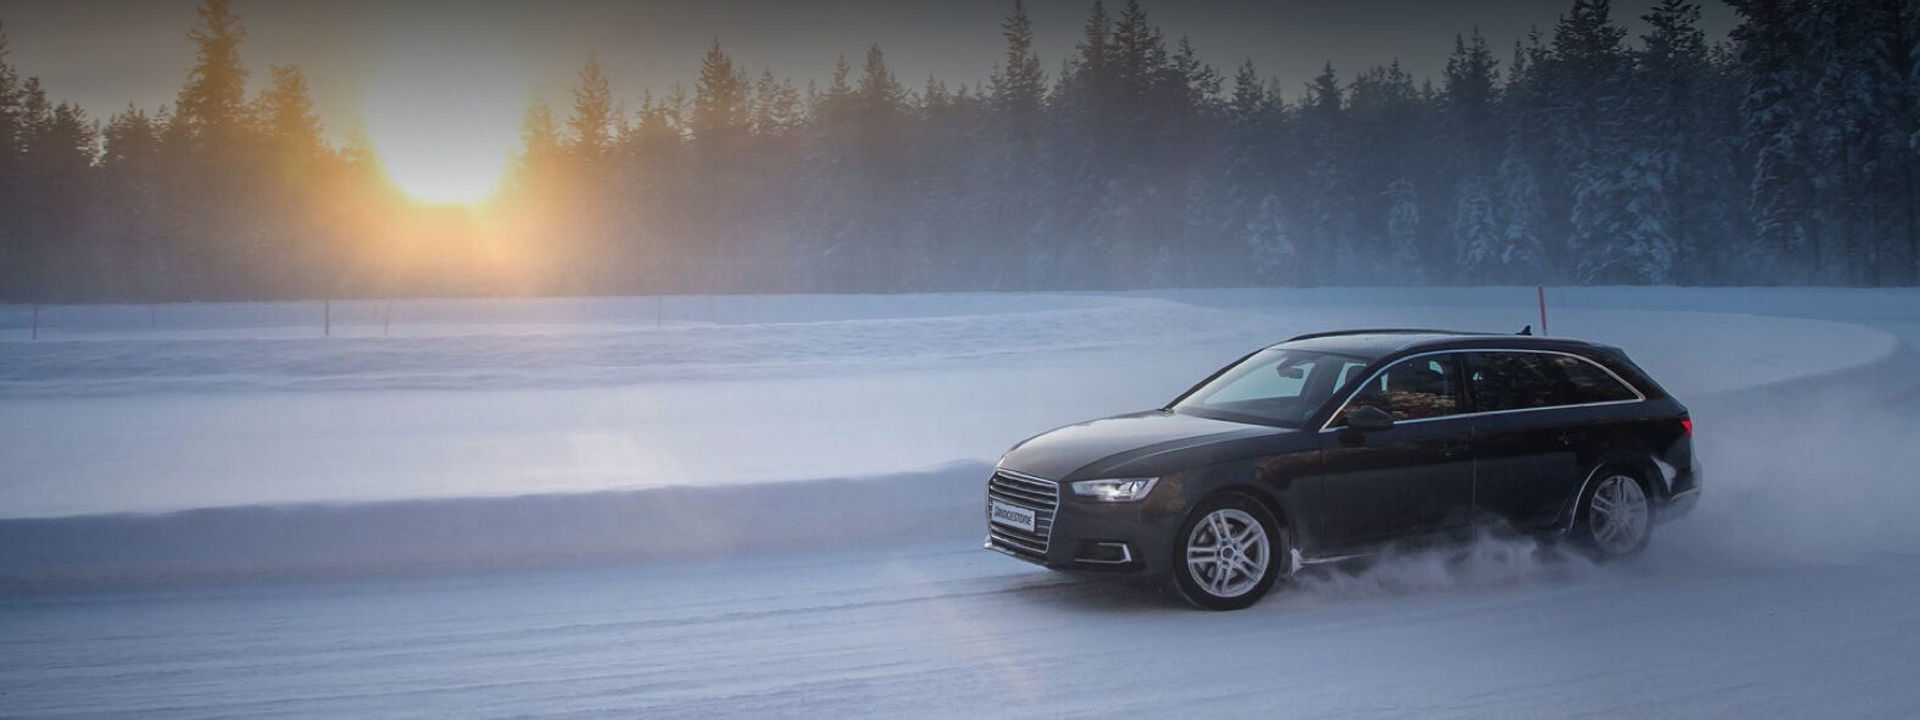 Juodasis „Audi“ su „Blizzak LM005“ žieminėmis padangomis pasisuka už sniego pusnies snieguotame kelyje miško viduryje. 